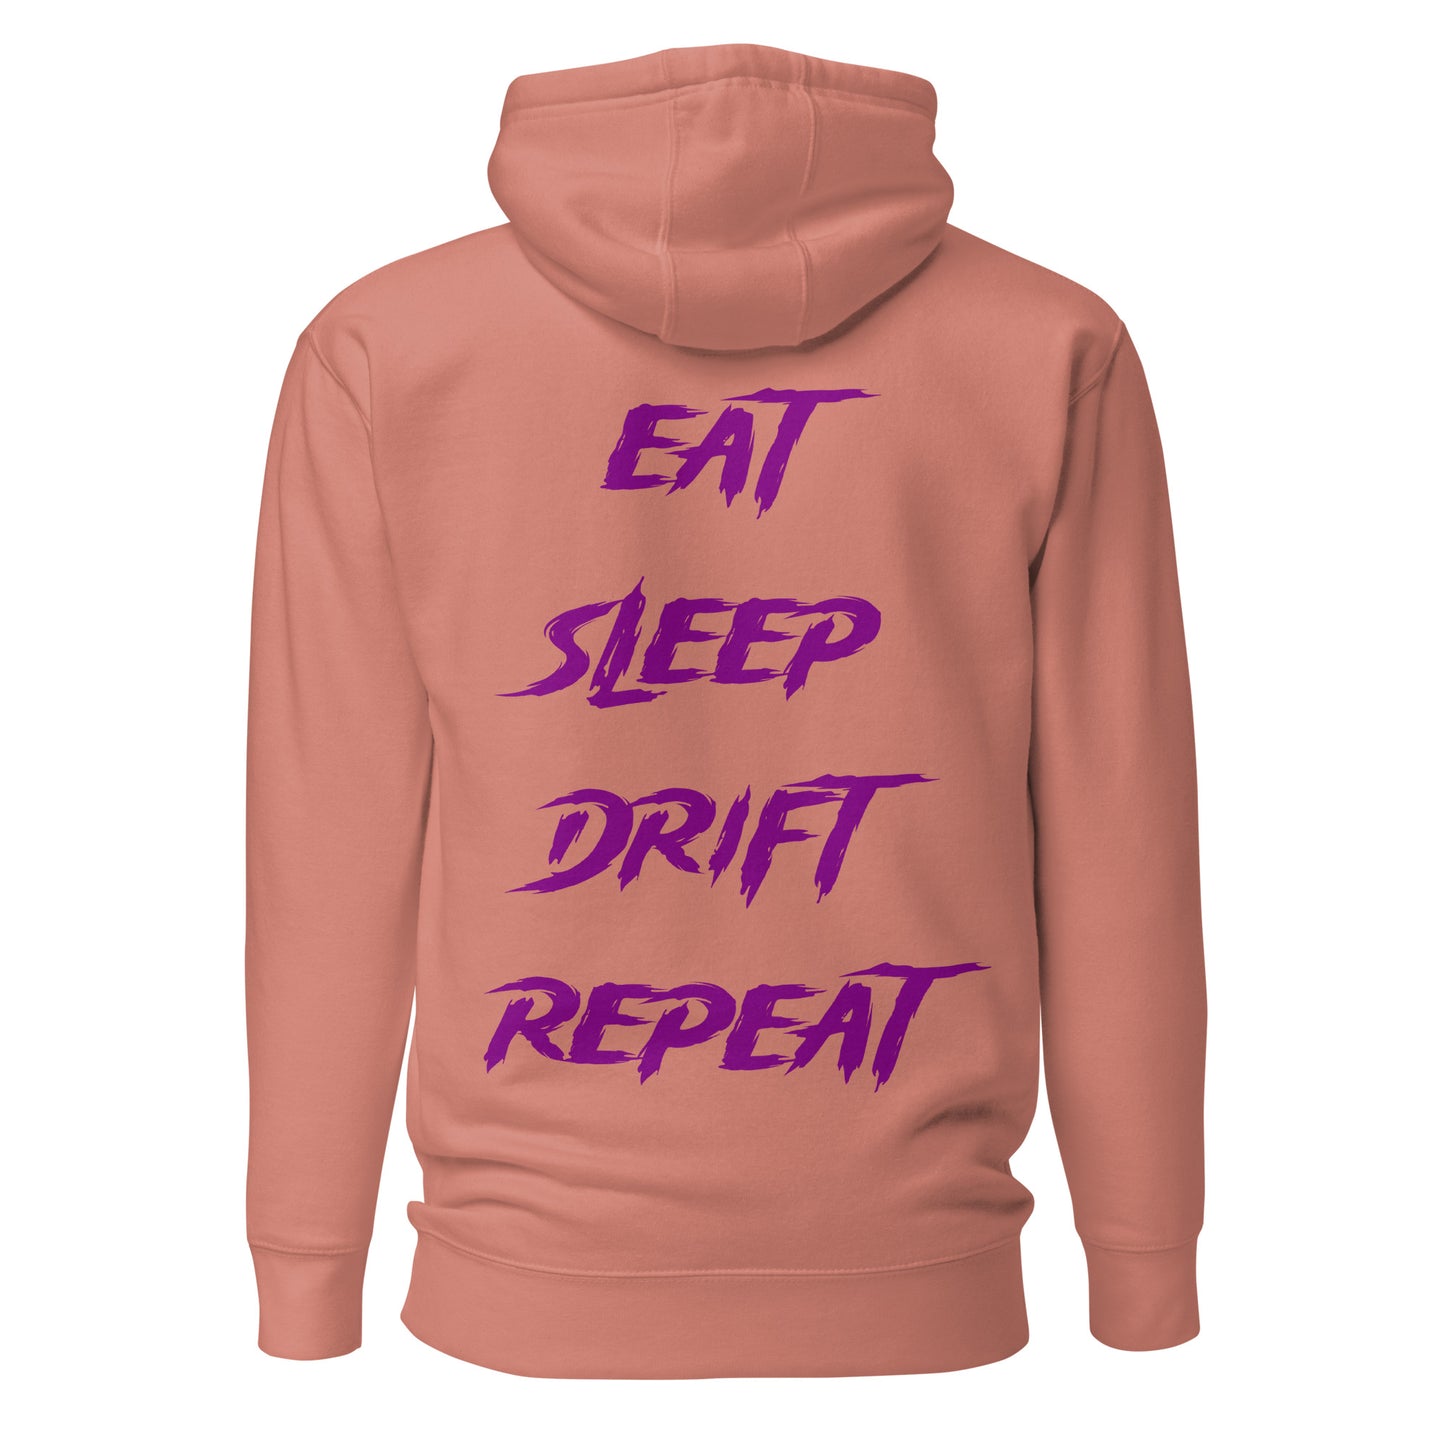 Eat Sleep Drift Repeat Purple